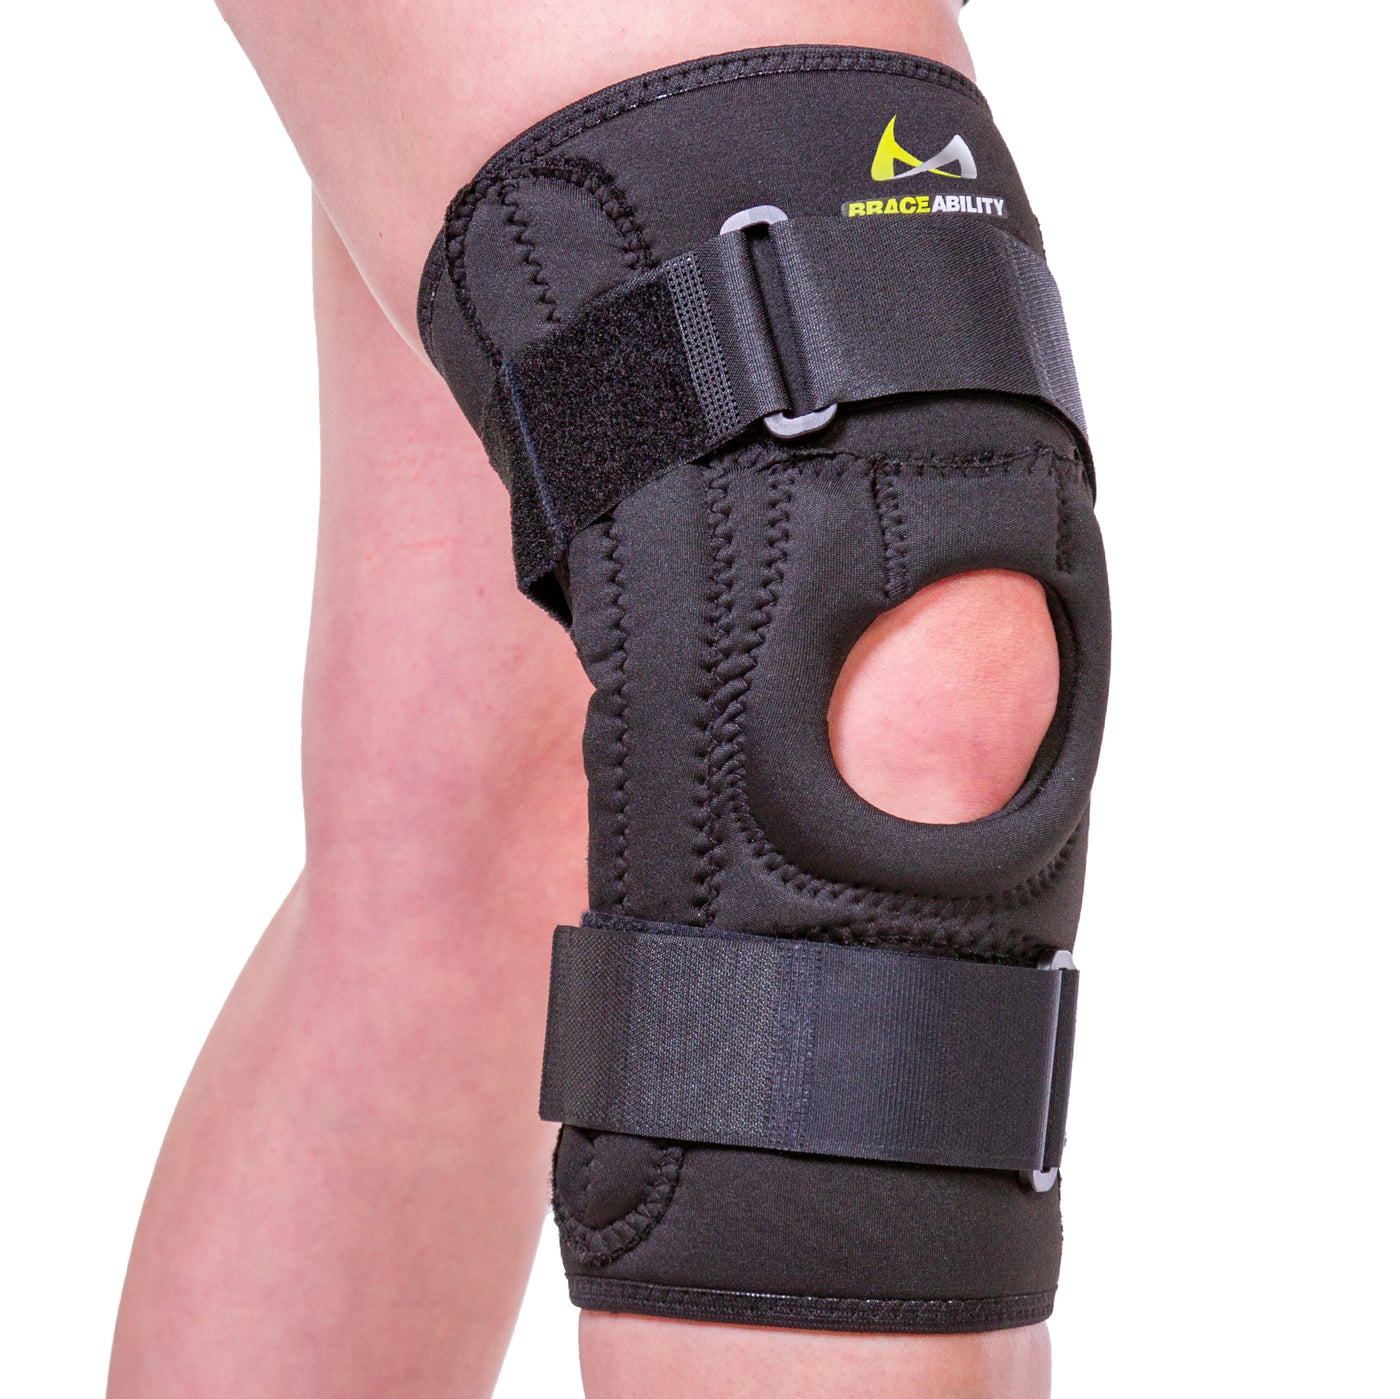 https://www.braceability.com/cdn/shop/products/03k07-u-shaped-patella-stabilizing-knee-brace_1400x.jpg?v=1617205618